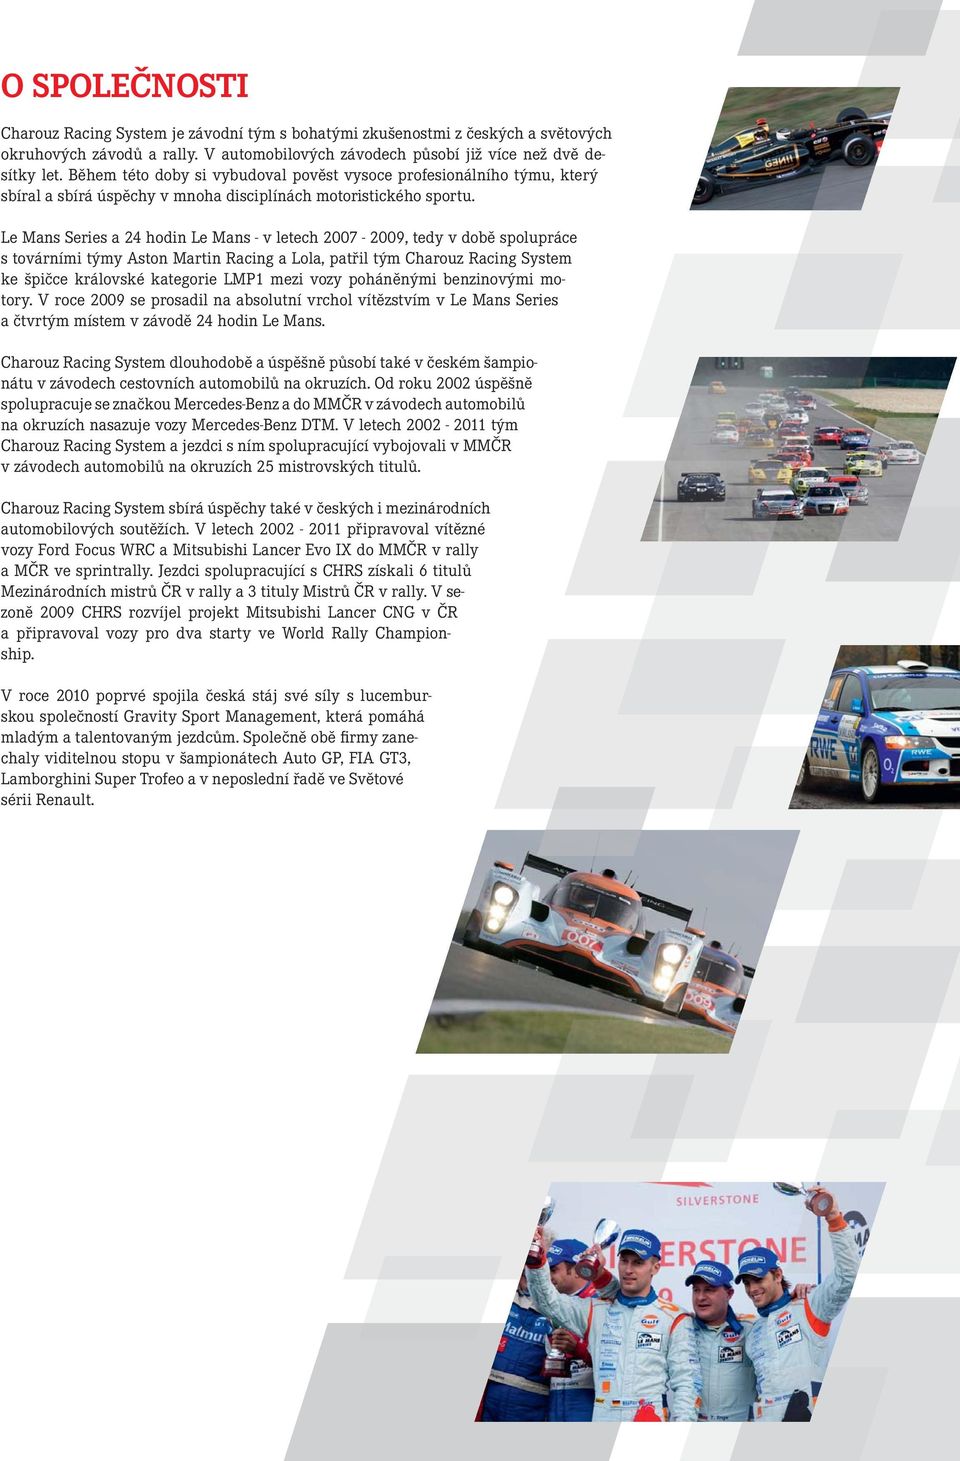 Le Mans Series a 24 hodin Le Mans - v letech 2007-2009, tedy v době spolupráce s továrními týmy Aston Martin Racing a Lola, patřil tým Charouz Racing System ke špičce královské kategorie LMP1 mezi